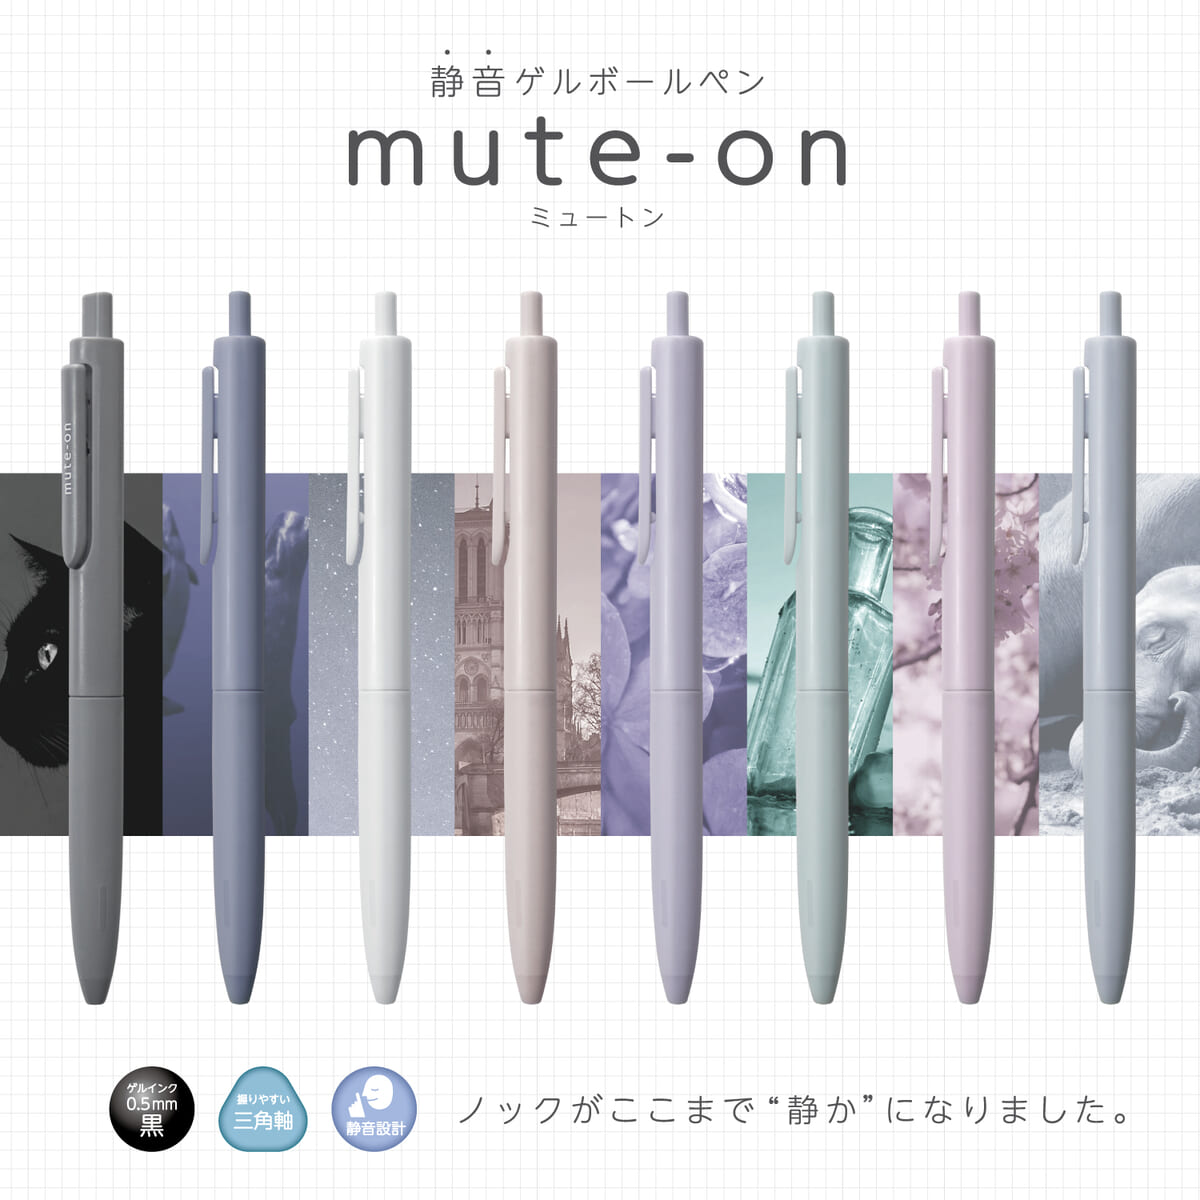 サンスター文具「mute-on(ミュートン)」